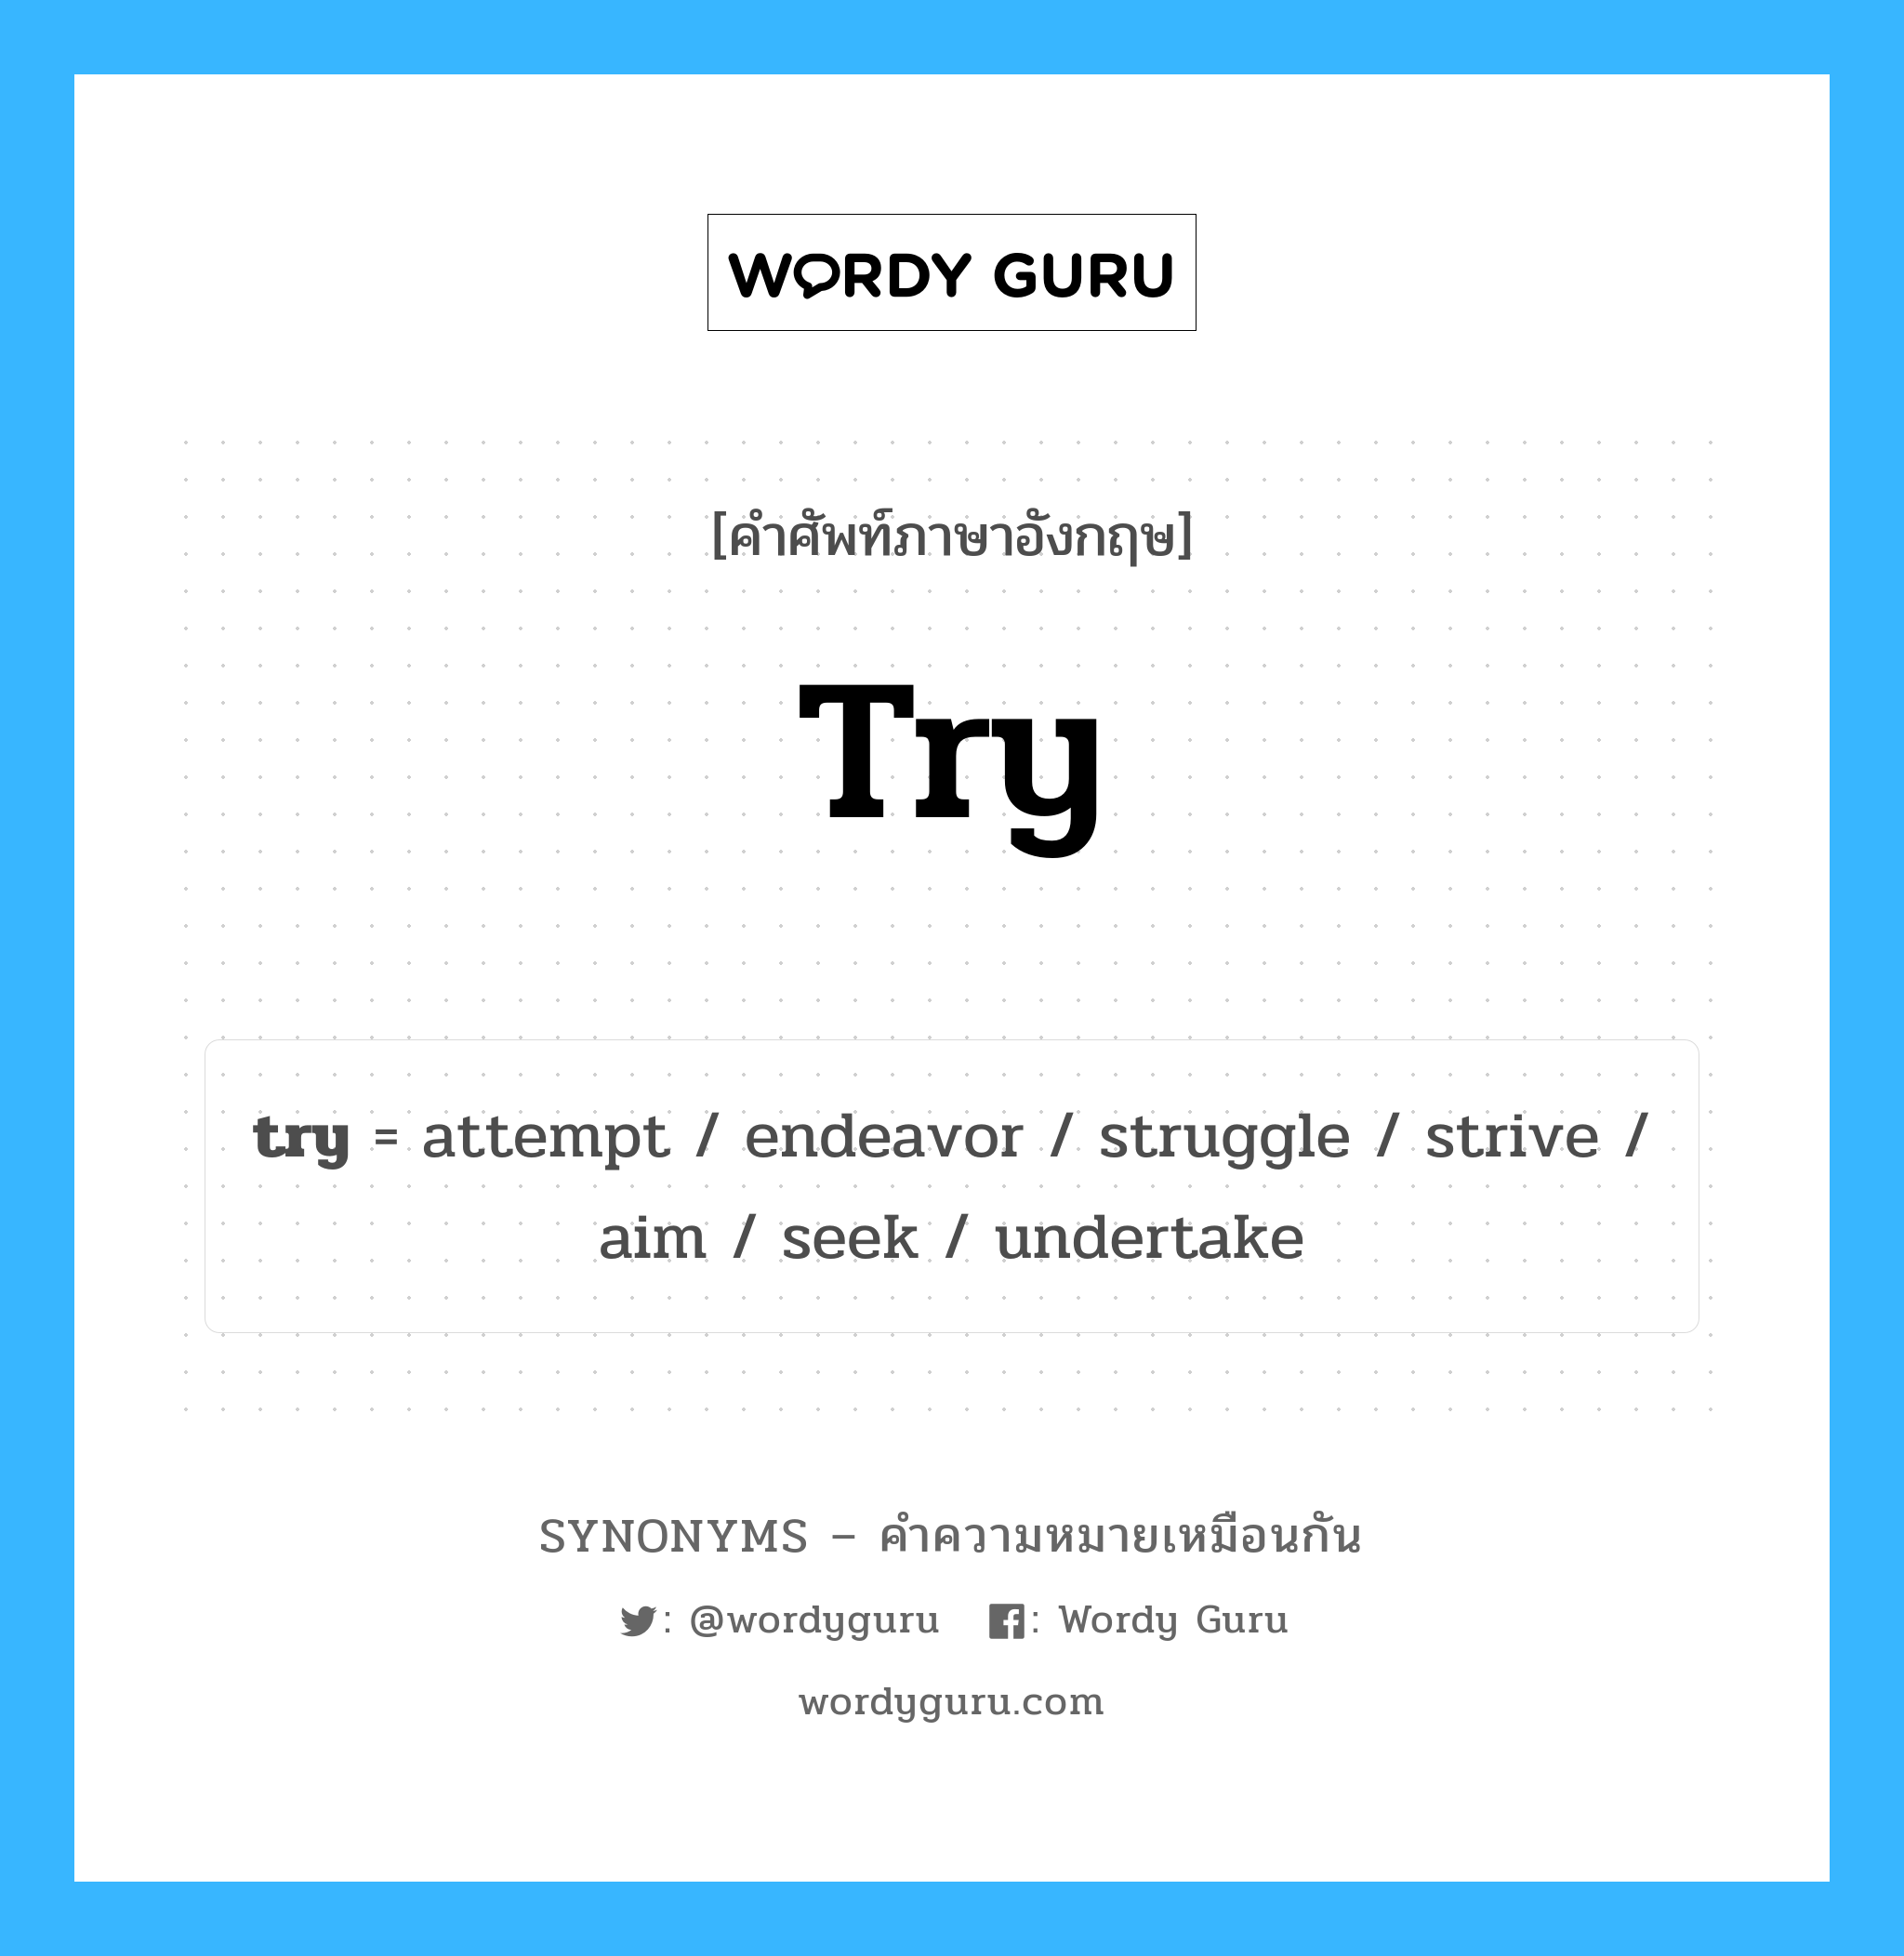 undertake เป็นหนึ่งใน try และมีคำอื่น ๆ อีกดังนี้, คำศัพท์ภาษาอังกฤษ undertake ความหมายคล้ายกันกับ try แปลว่า ดำเนินการ หมวด try